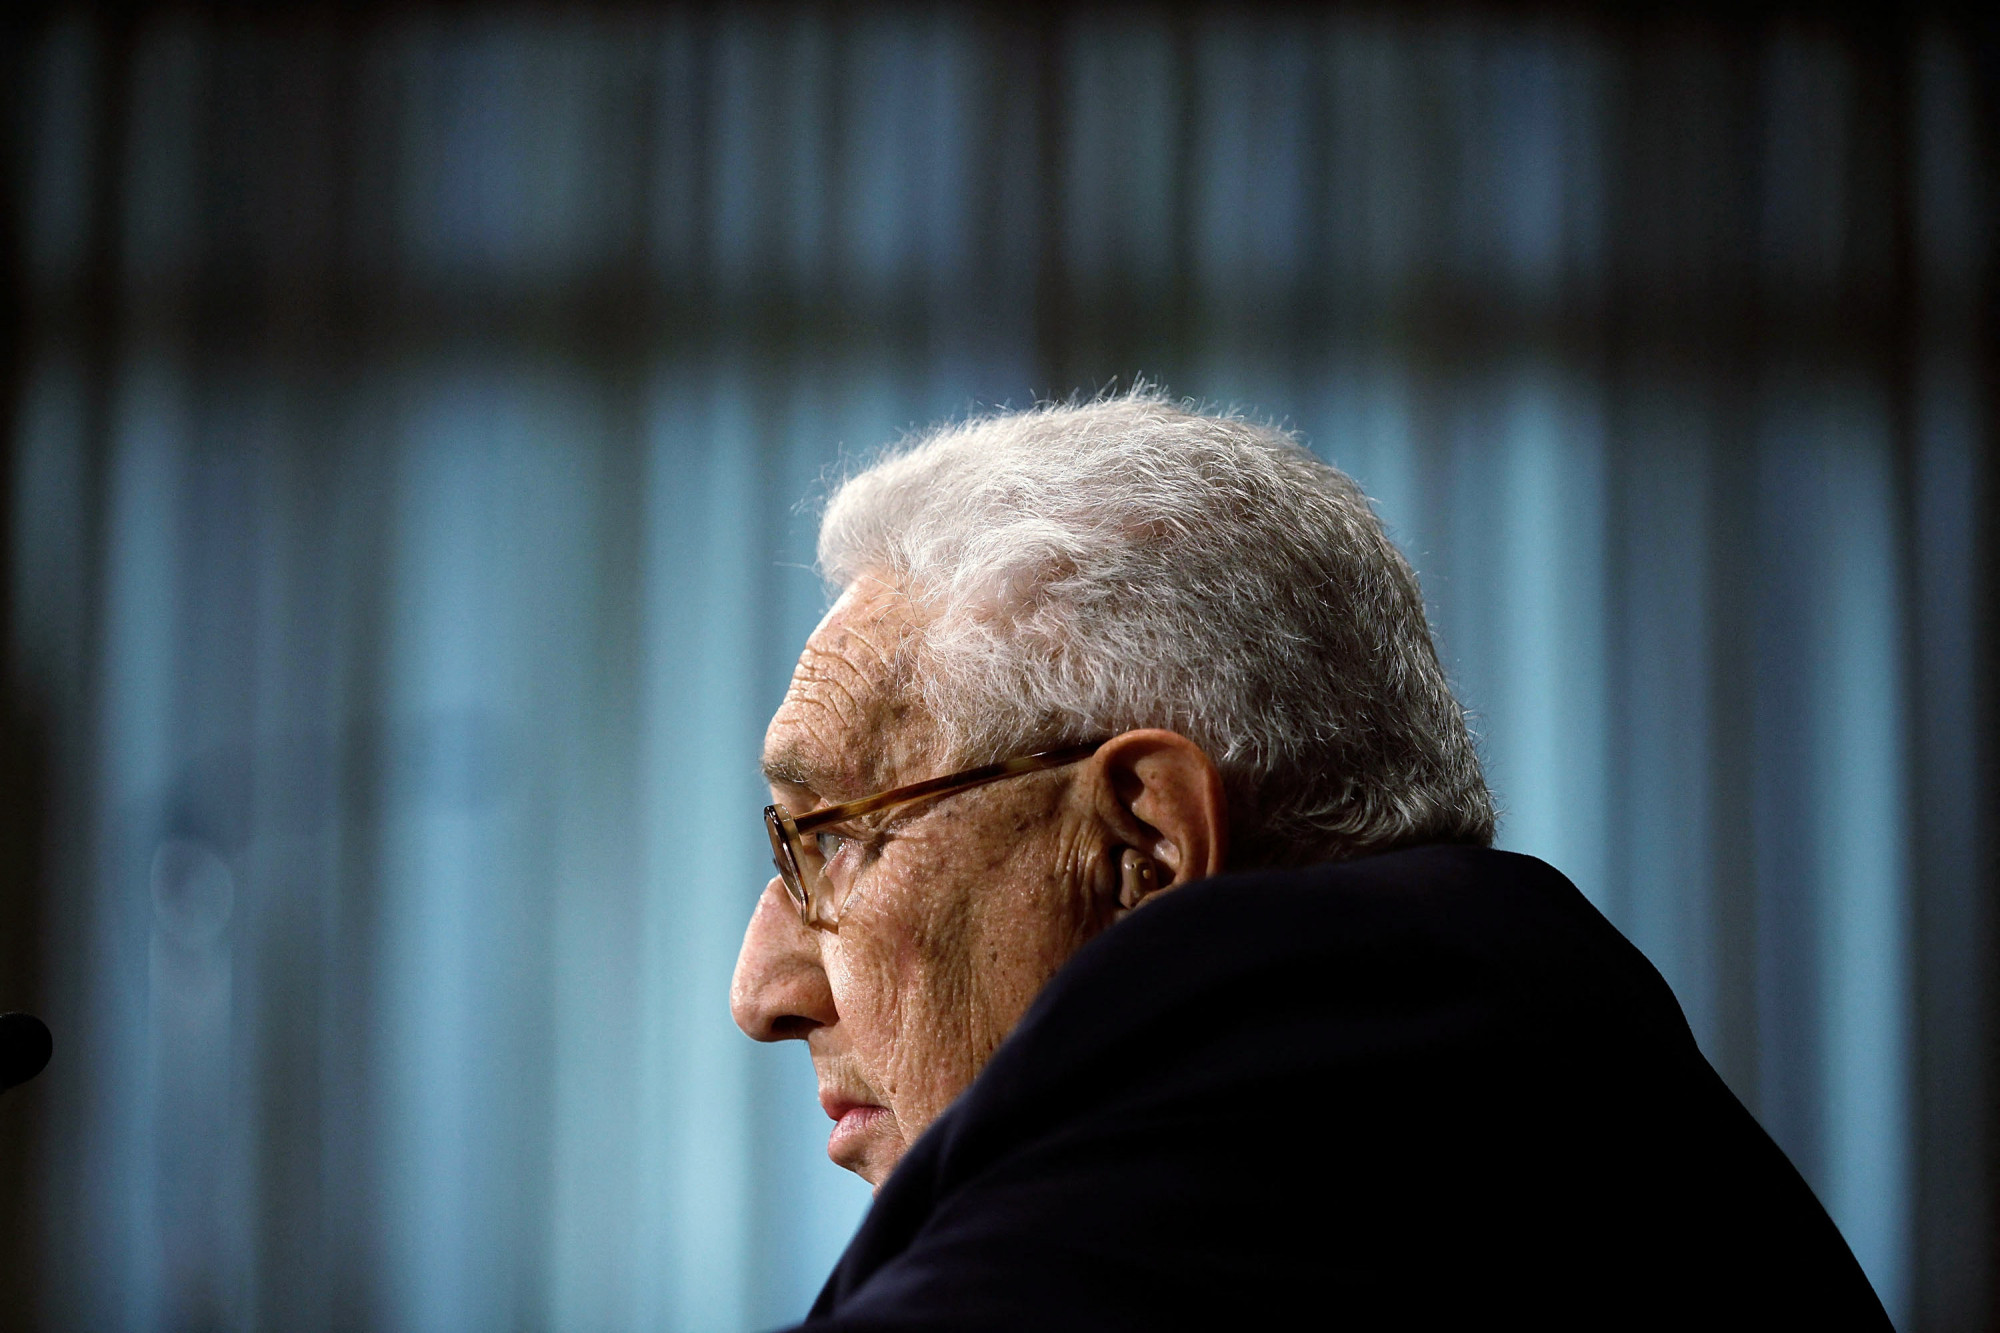 Hétvégi olvasnivalók Kissinger háborús bűneitől Orbán ukránellenes harcáig